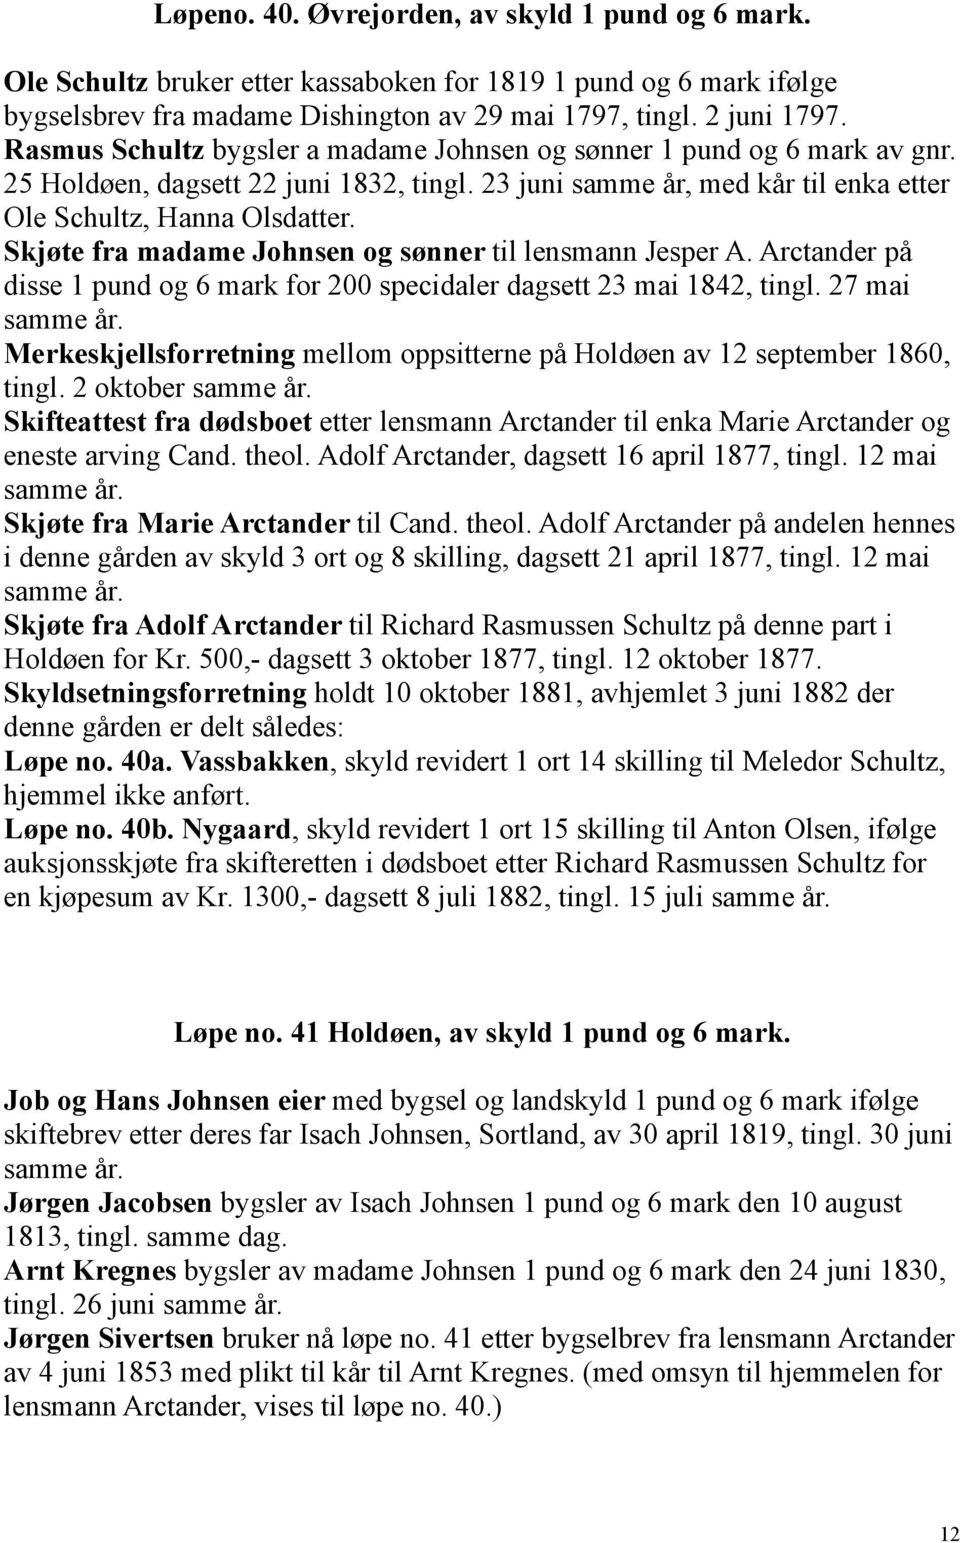 Skjøte fra madame Johnsen og sønner til lensmann Jesper A. Arctander på disse 1 pund og 6 mark for 200 specidaler dagsett 23 mai 1842, tingl. 27 mai samme år.